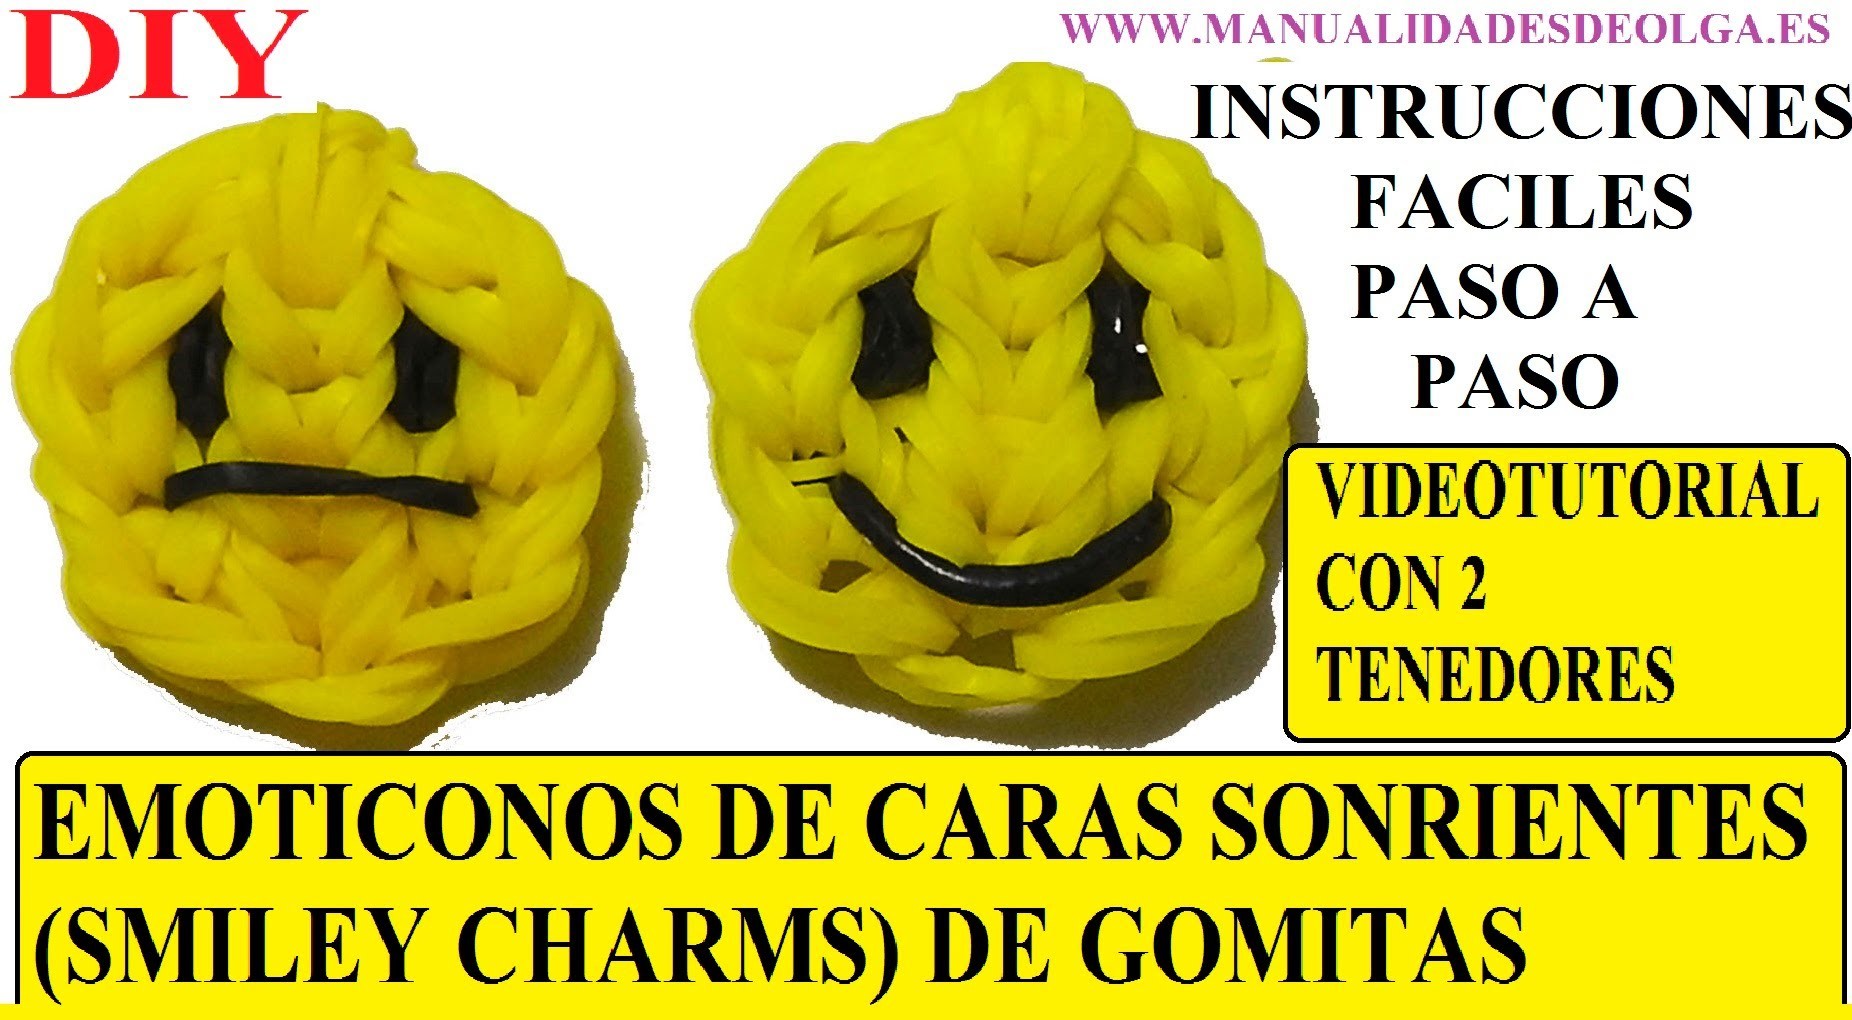 EMOTICONOS. COMO HACER UNA CARA SONRIENTE DE GOMITAS (SMILEY CHARMS) CON DOS TENEDORES. TUTORIAL DIY